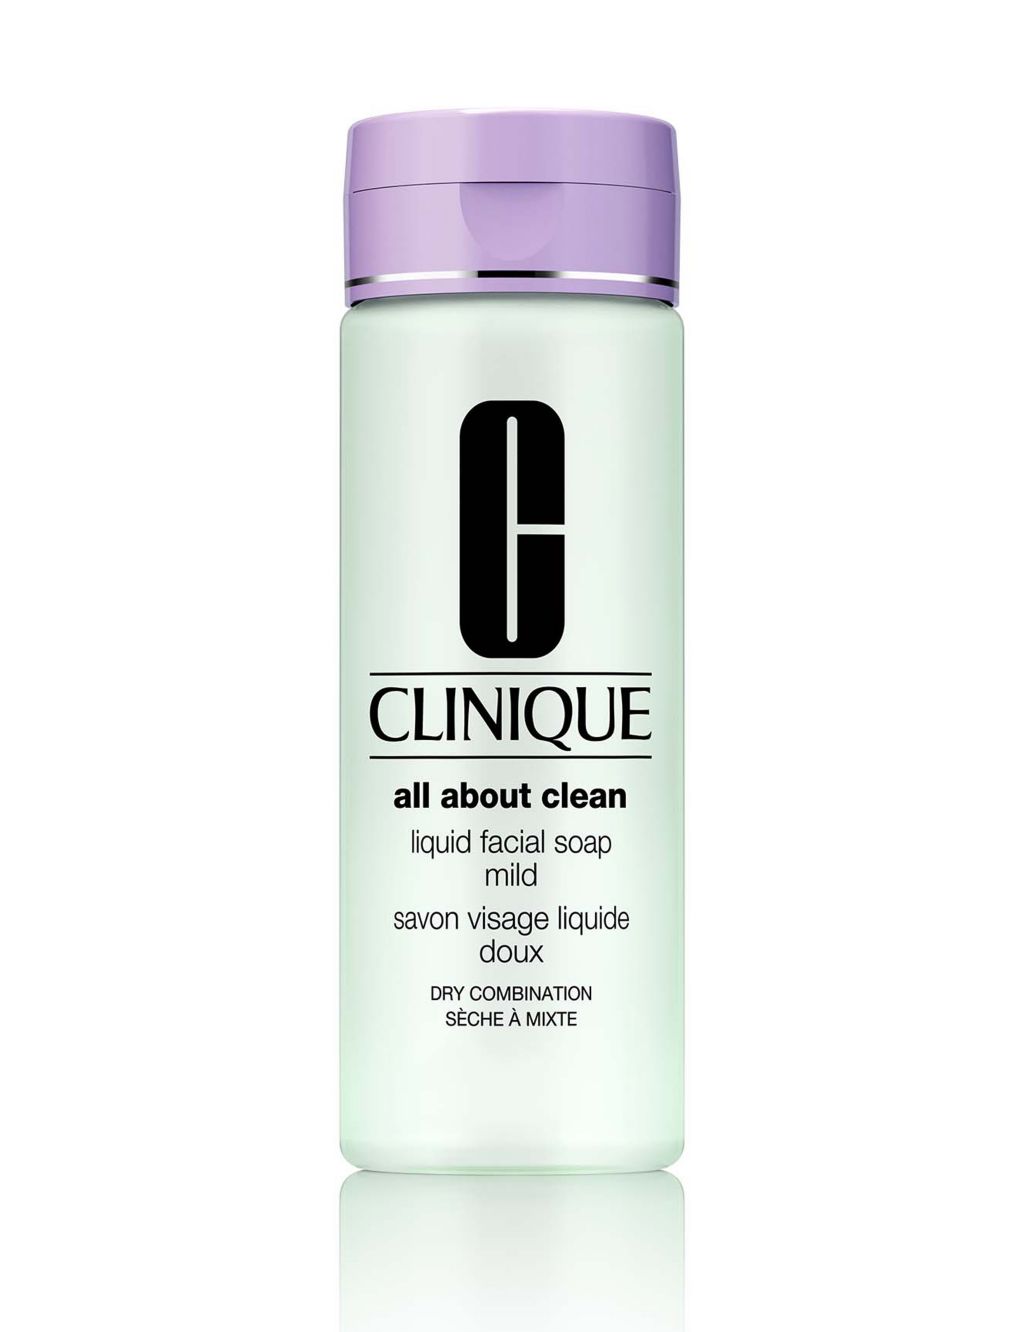 Clinique Liquid Facial Soap 1 of 1